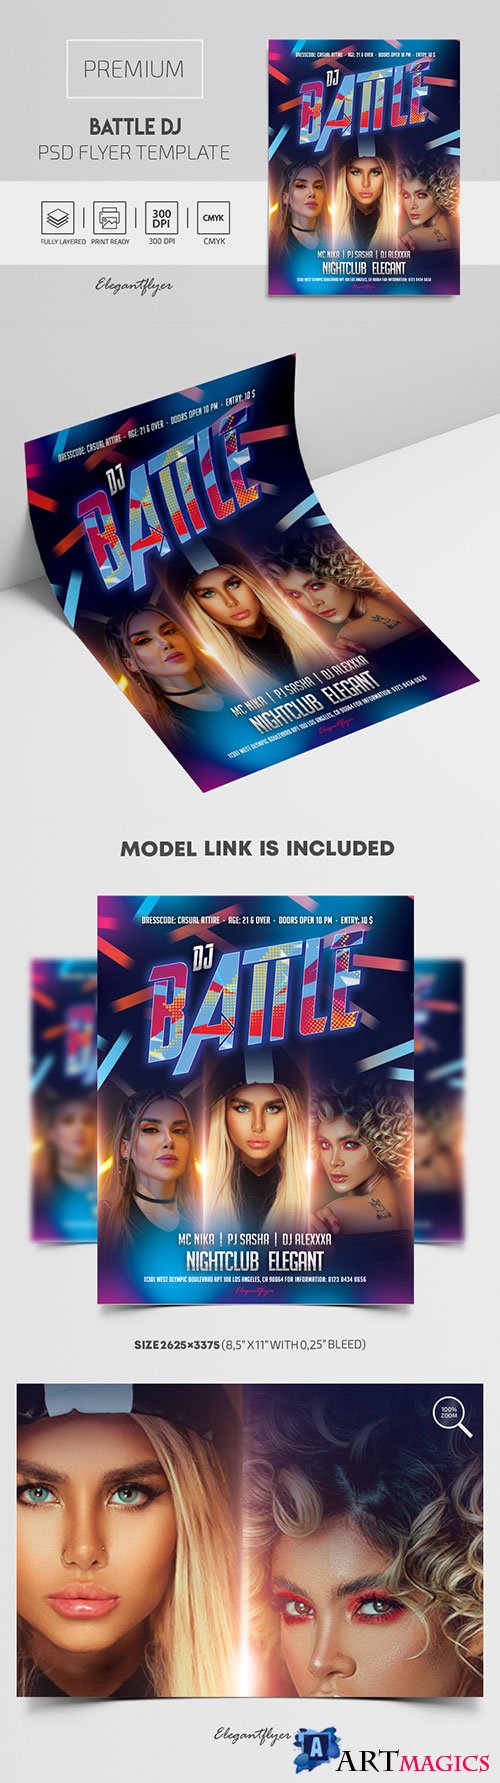 Battle DJ Premium PSD Flyer Template